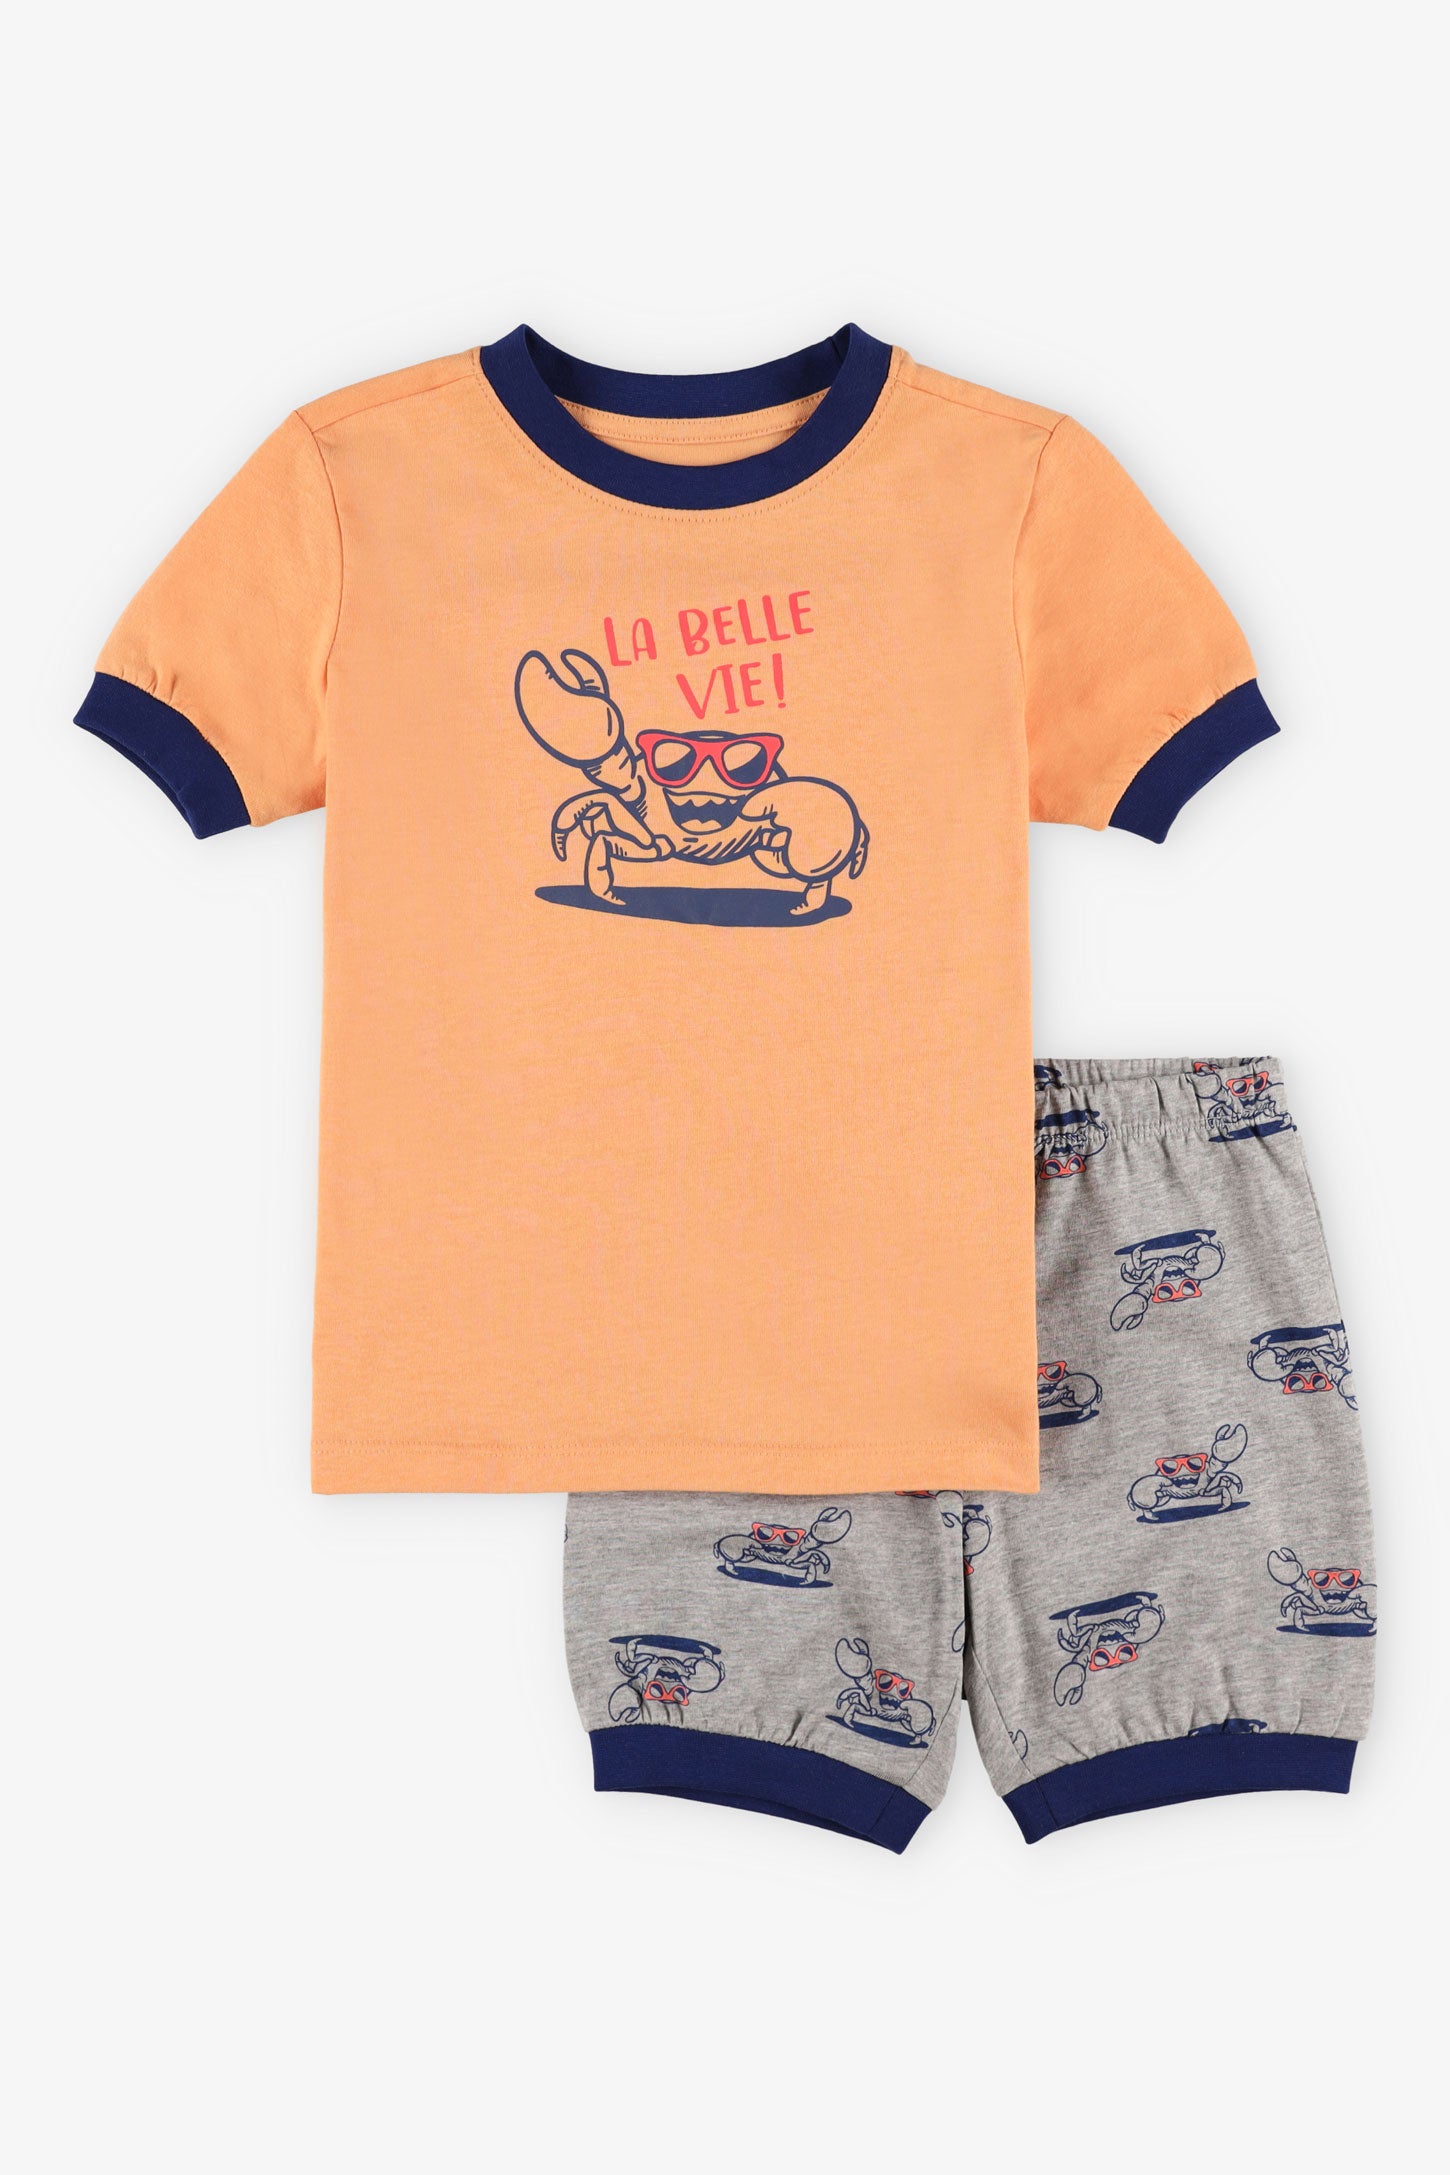 Pyjama 2-pièces t-shirt short coton, 2/35$ - Enfant garçon && ORANGE